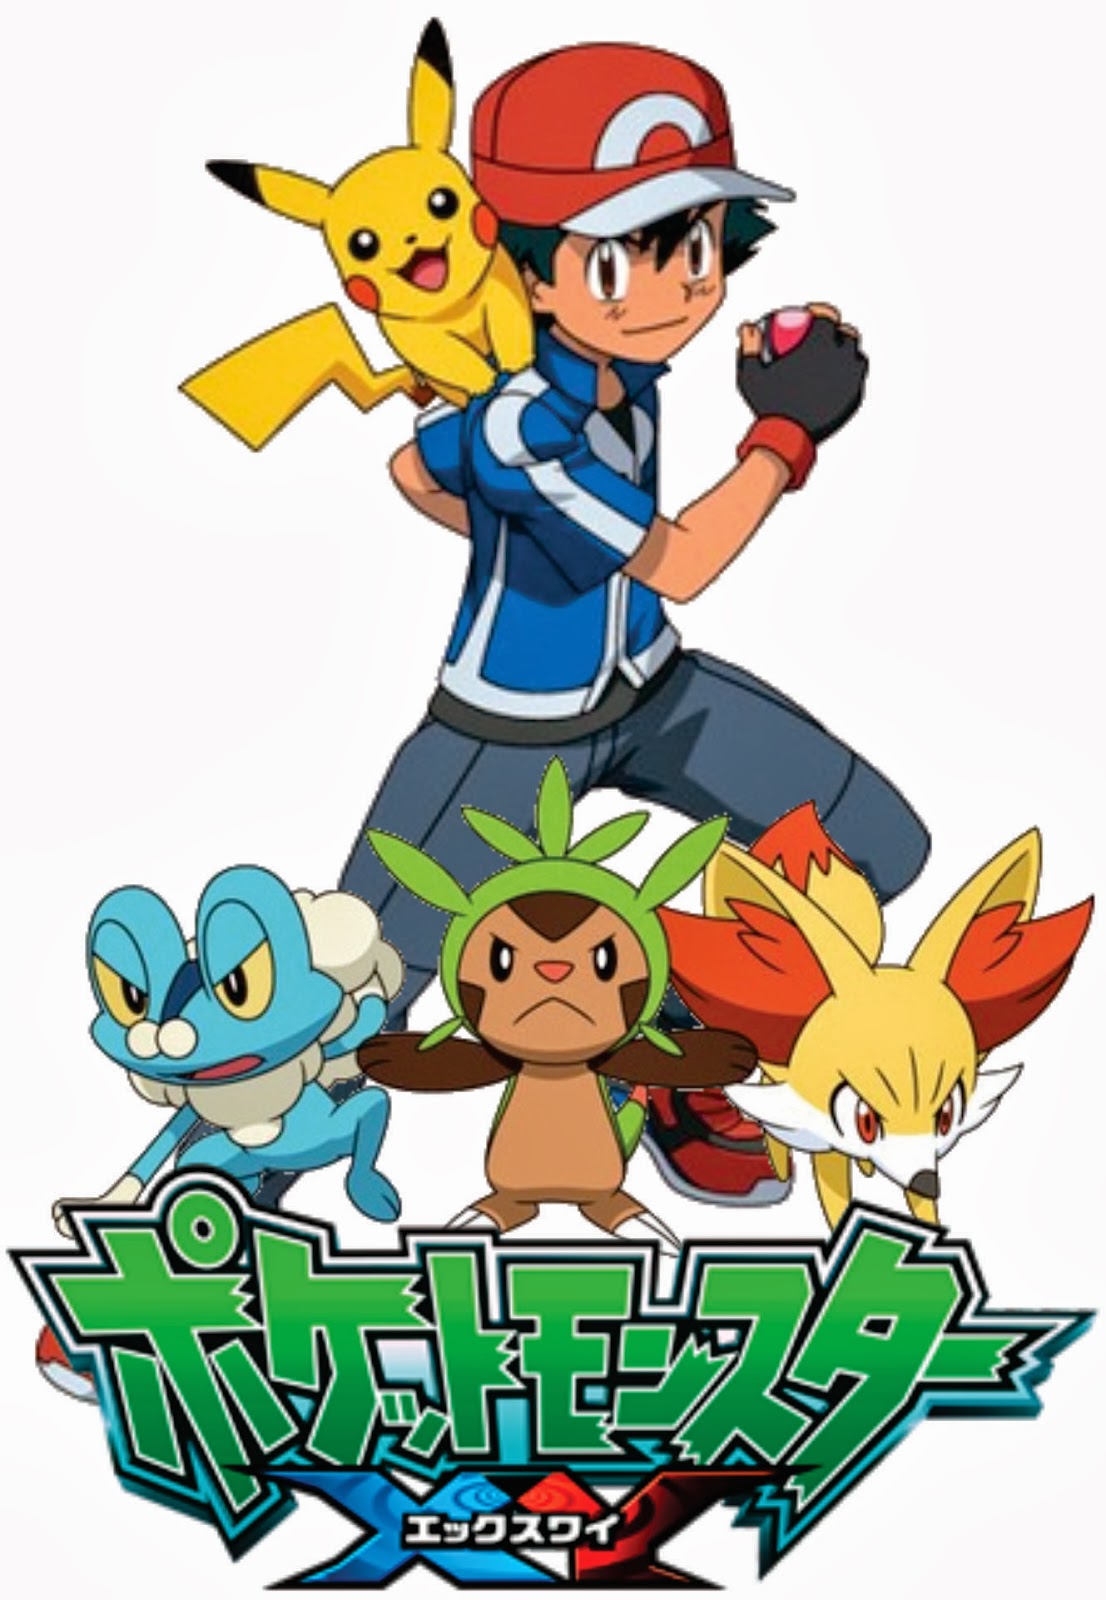 Abertura de Pokémon XY ganha uma versão em português